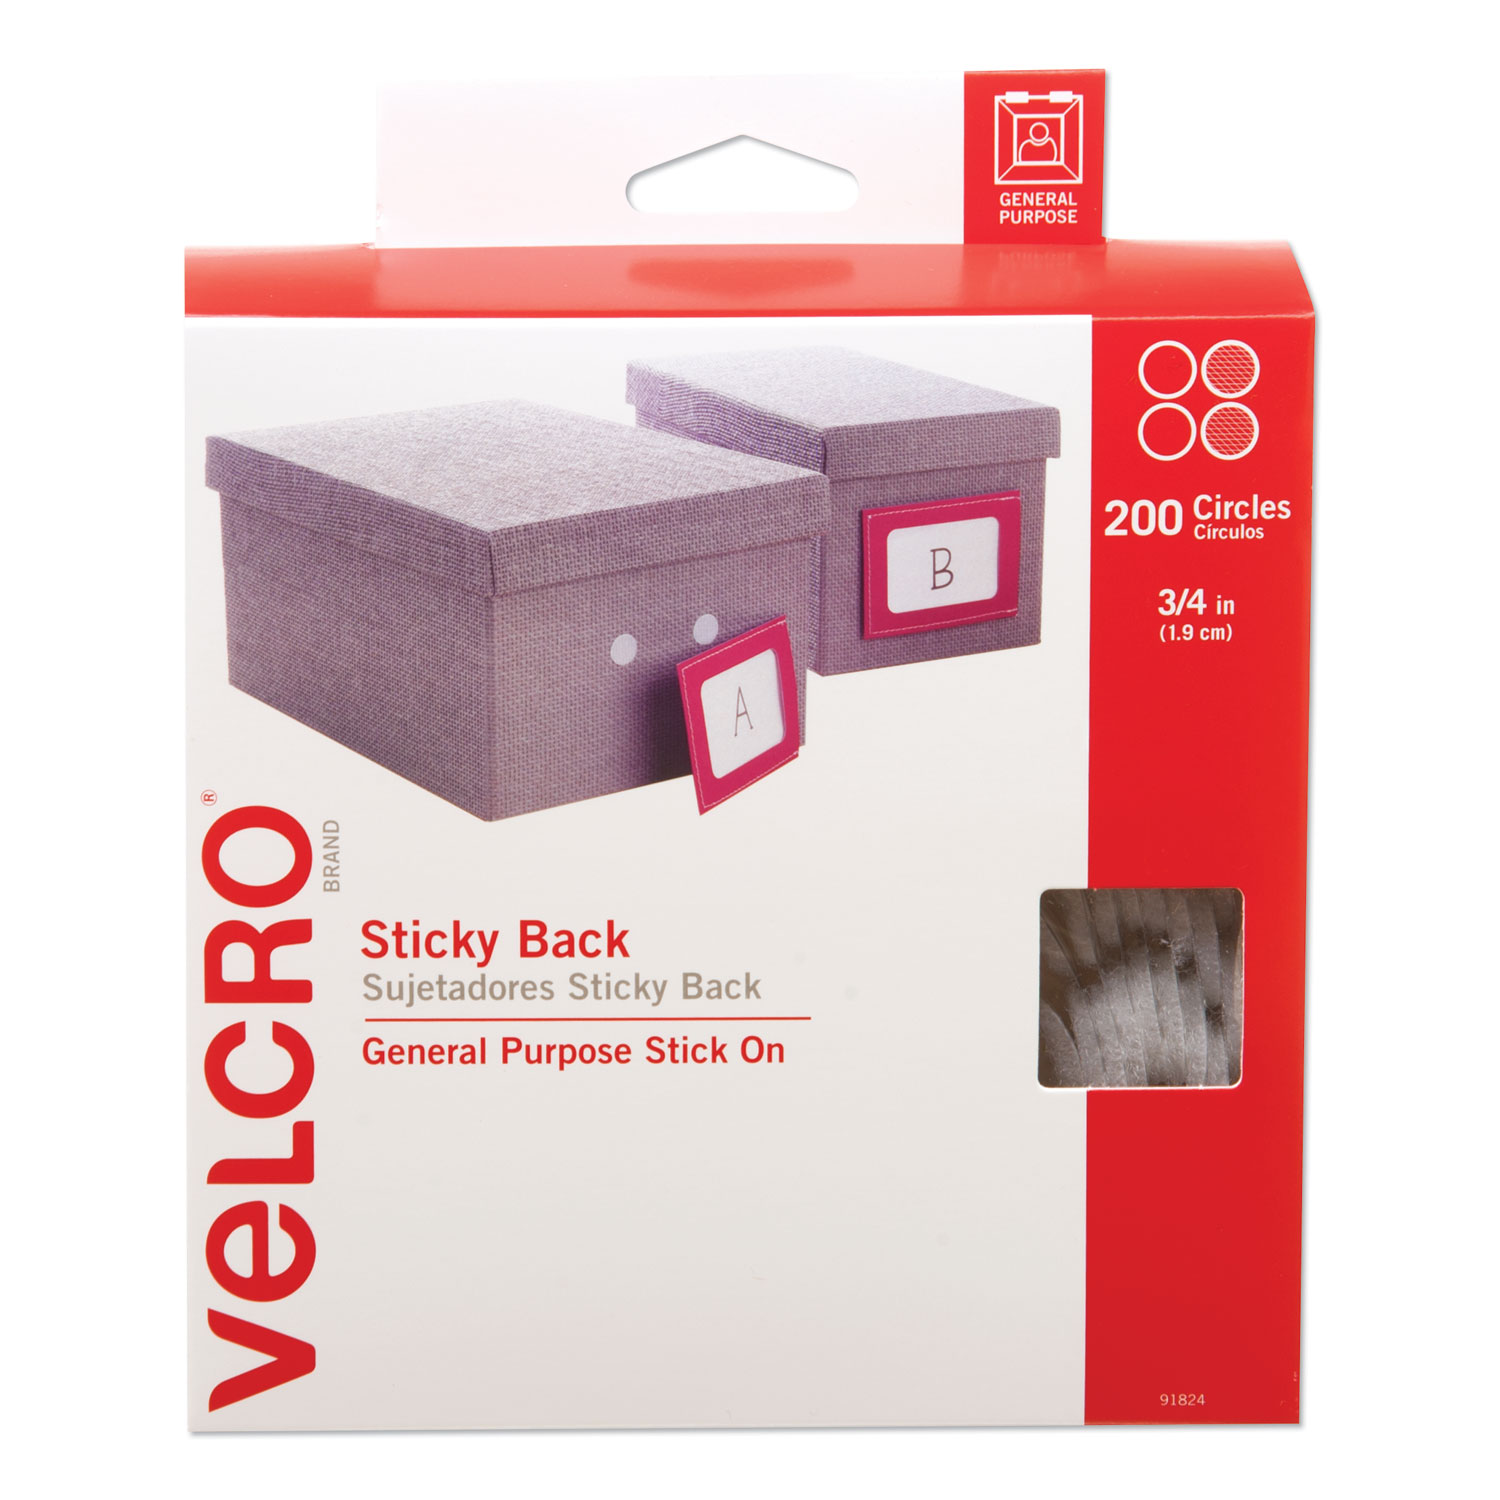 VELCRO Brand Sticky Back Tape, 5ft x 3/4in Roll, White - VEK90087 